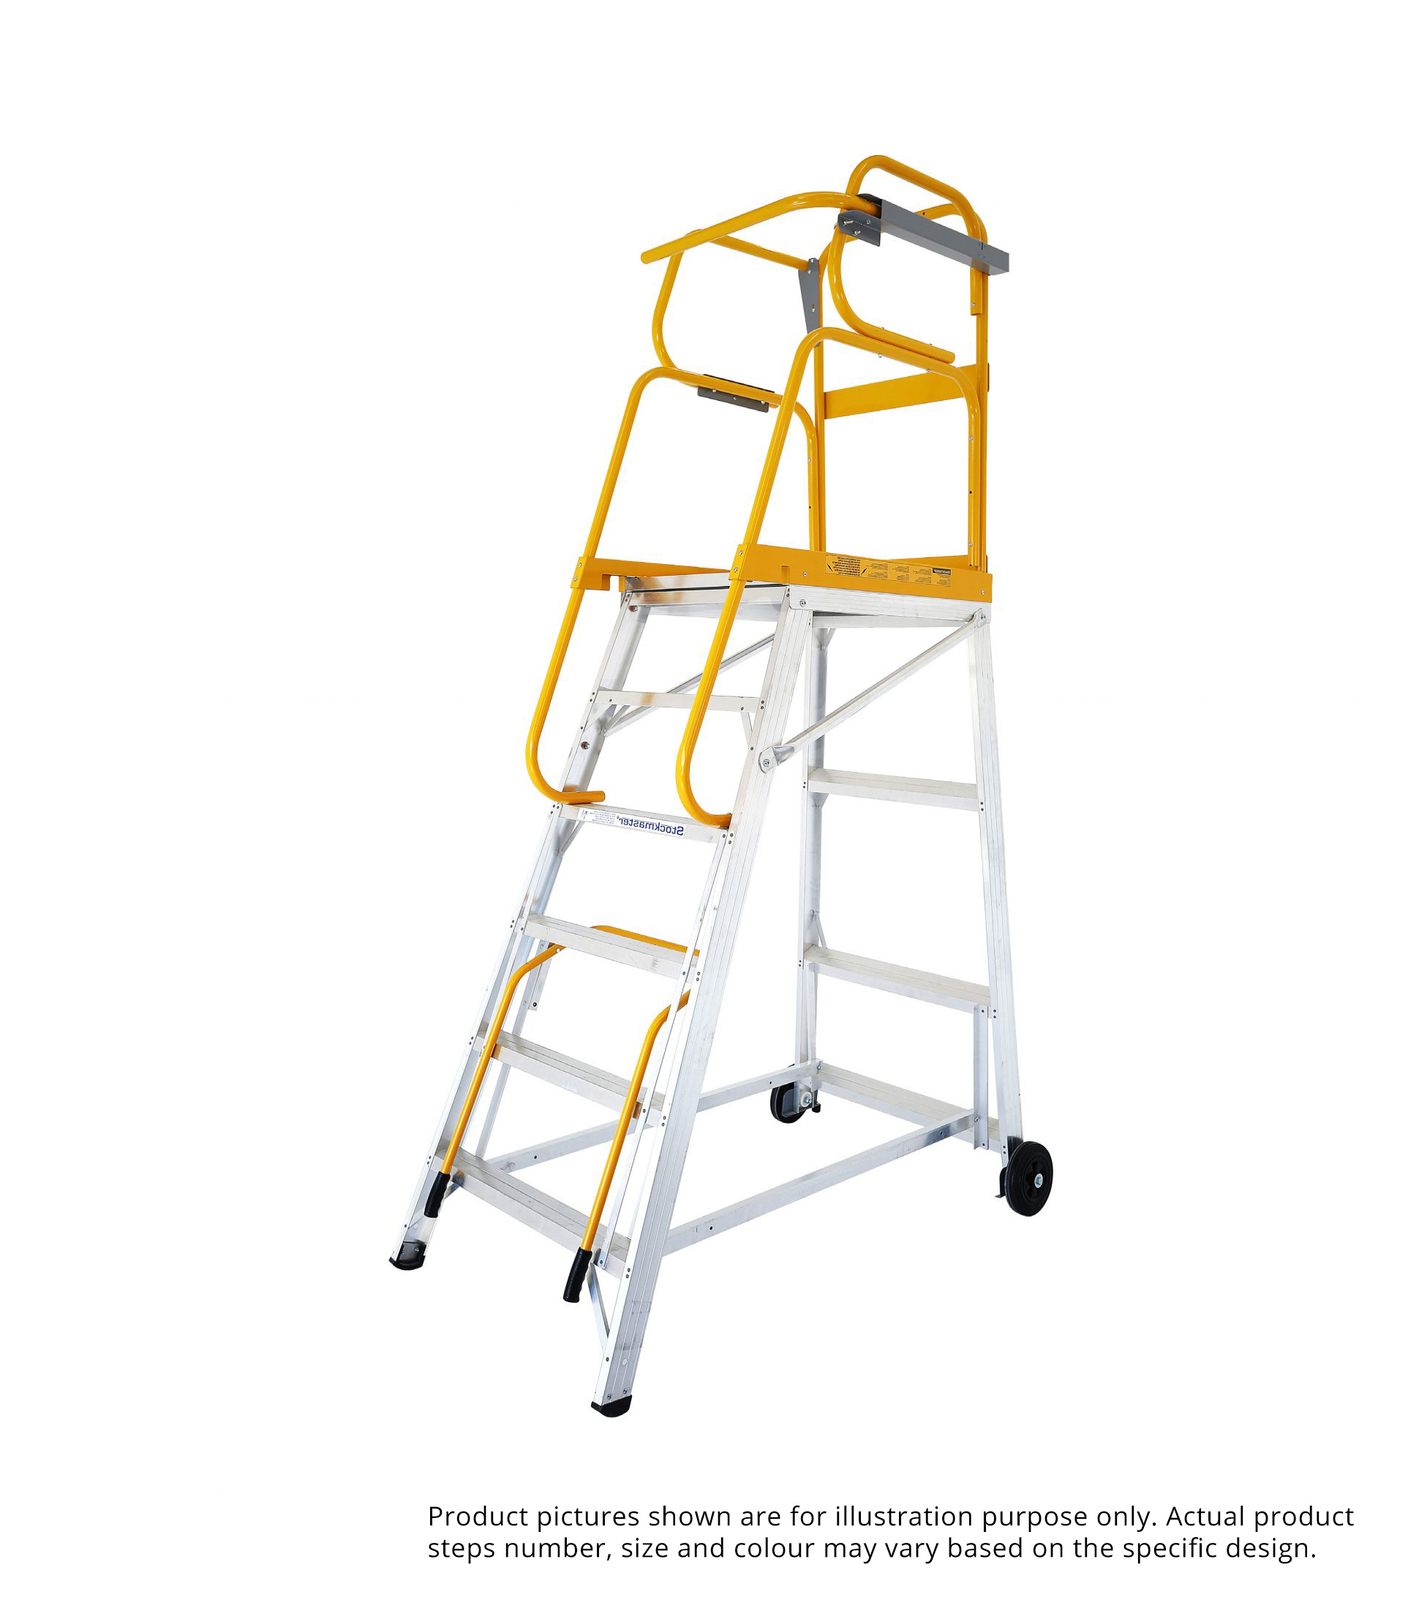 Stockmaster 150kg Rated Mobile Work Platform Ladder Tracker PRO - 3.7m